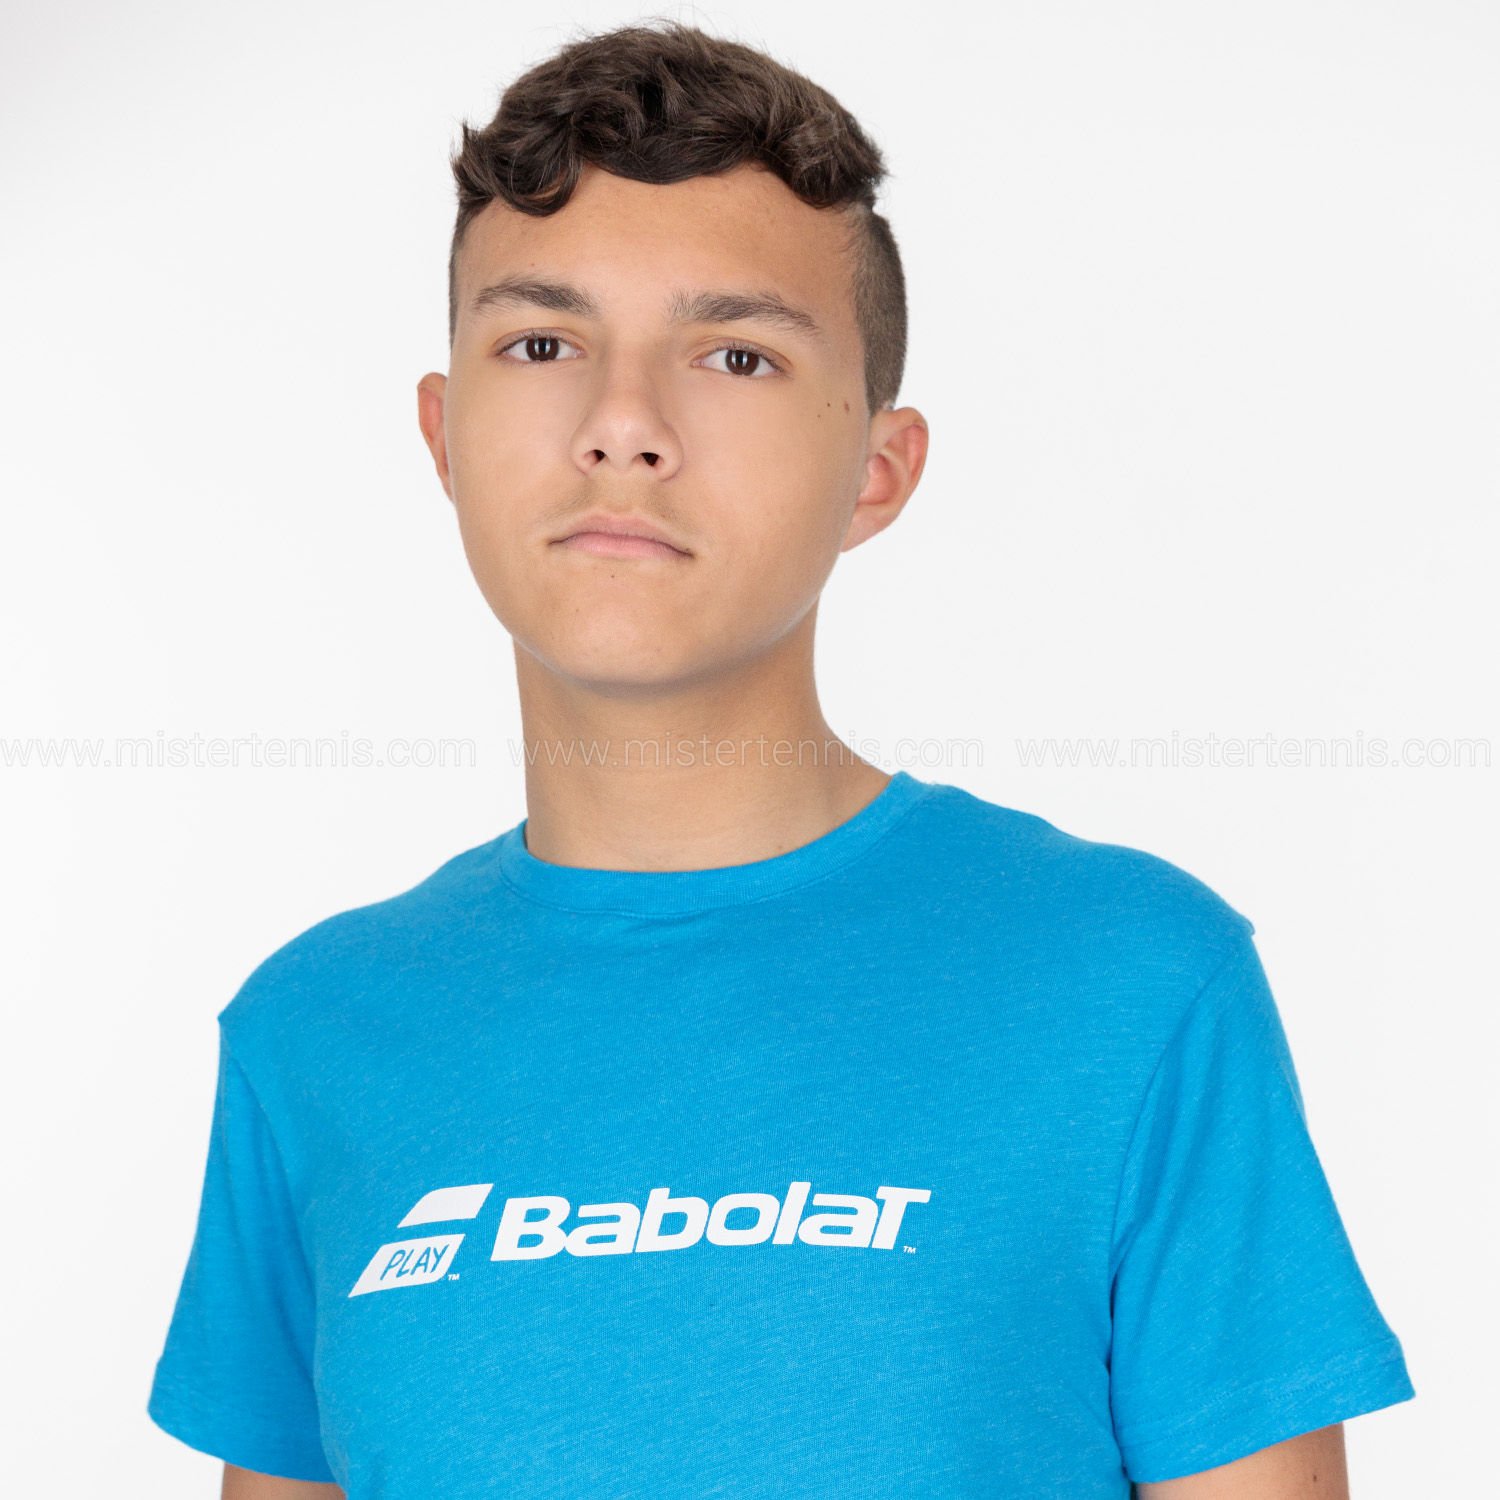 Babolat Exercise T-Shirt Boy - Blue Aster Heather